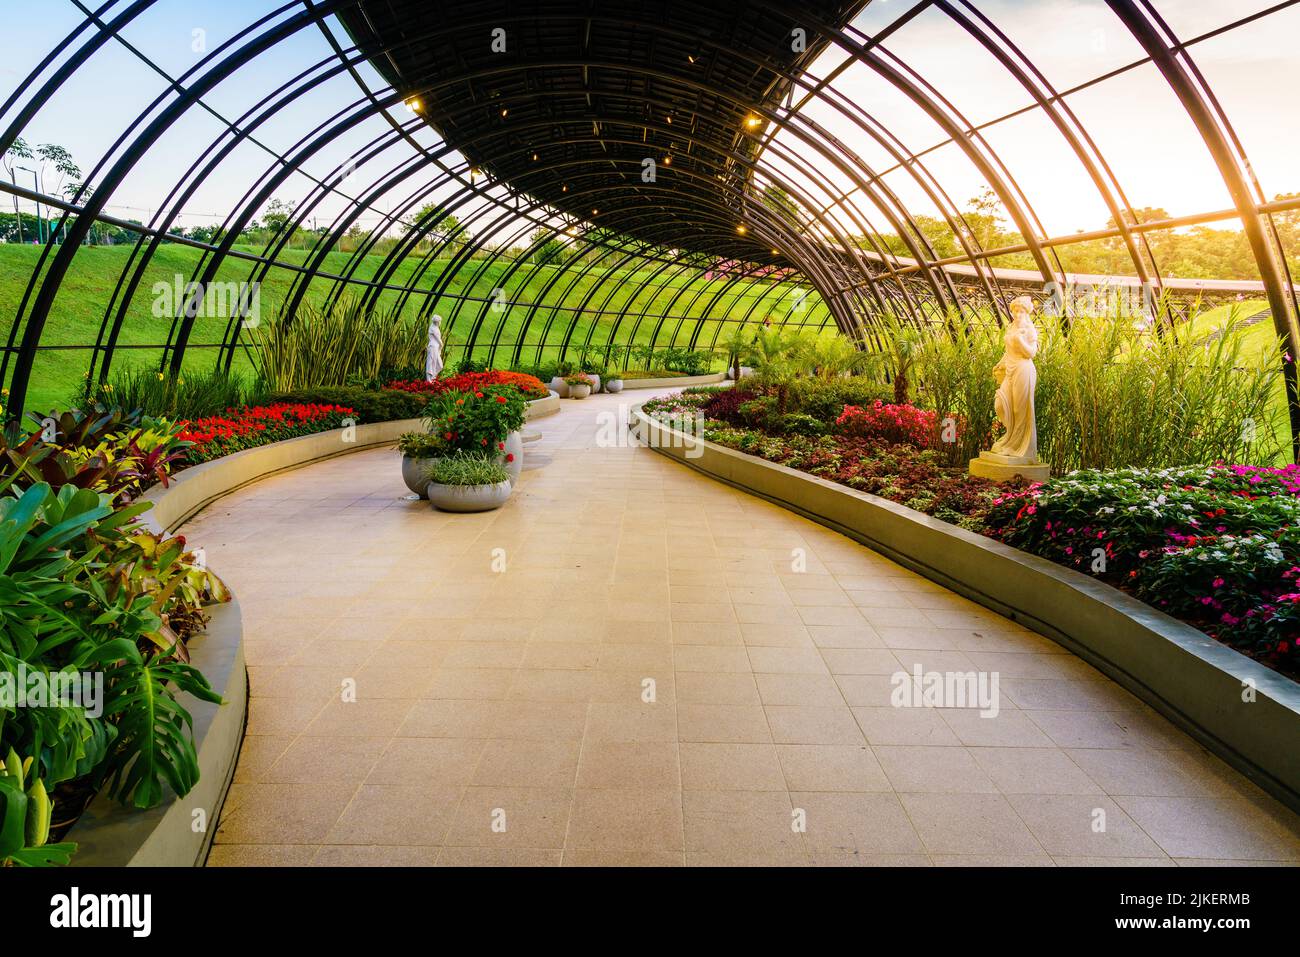 Im Inneren der Frans Krajcberg Galerie im Botanischen Garten von Curitiba, Brasilien Stockfoto